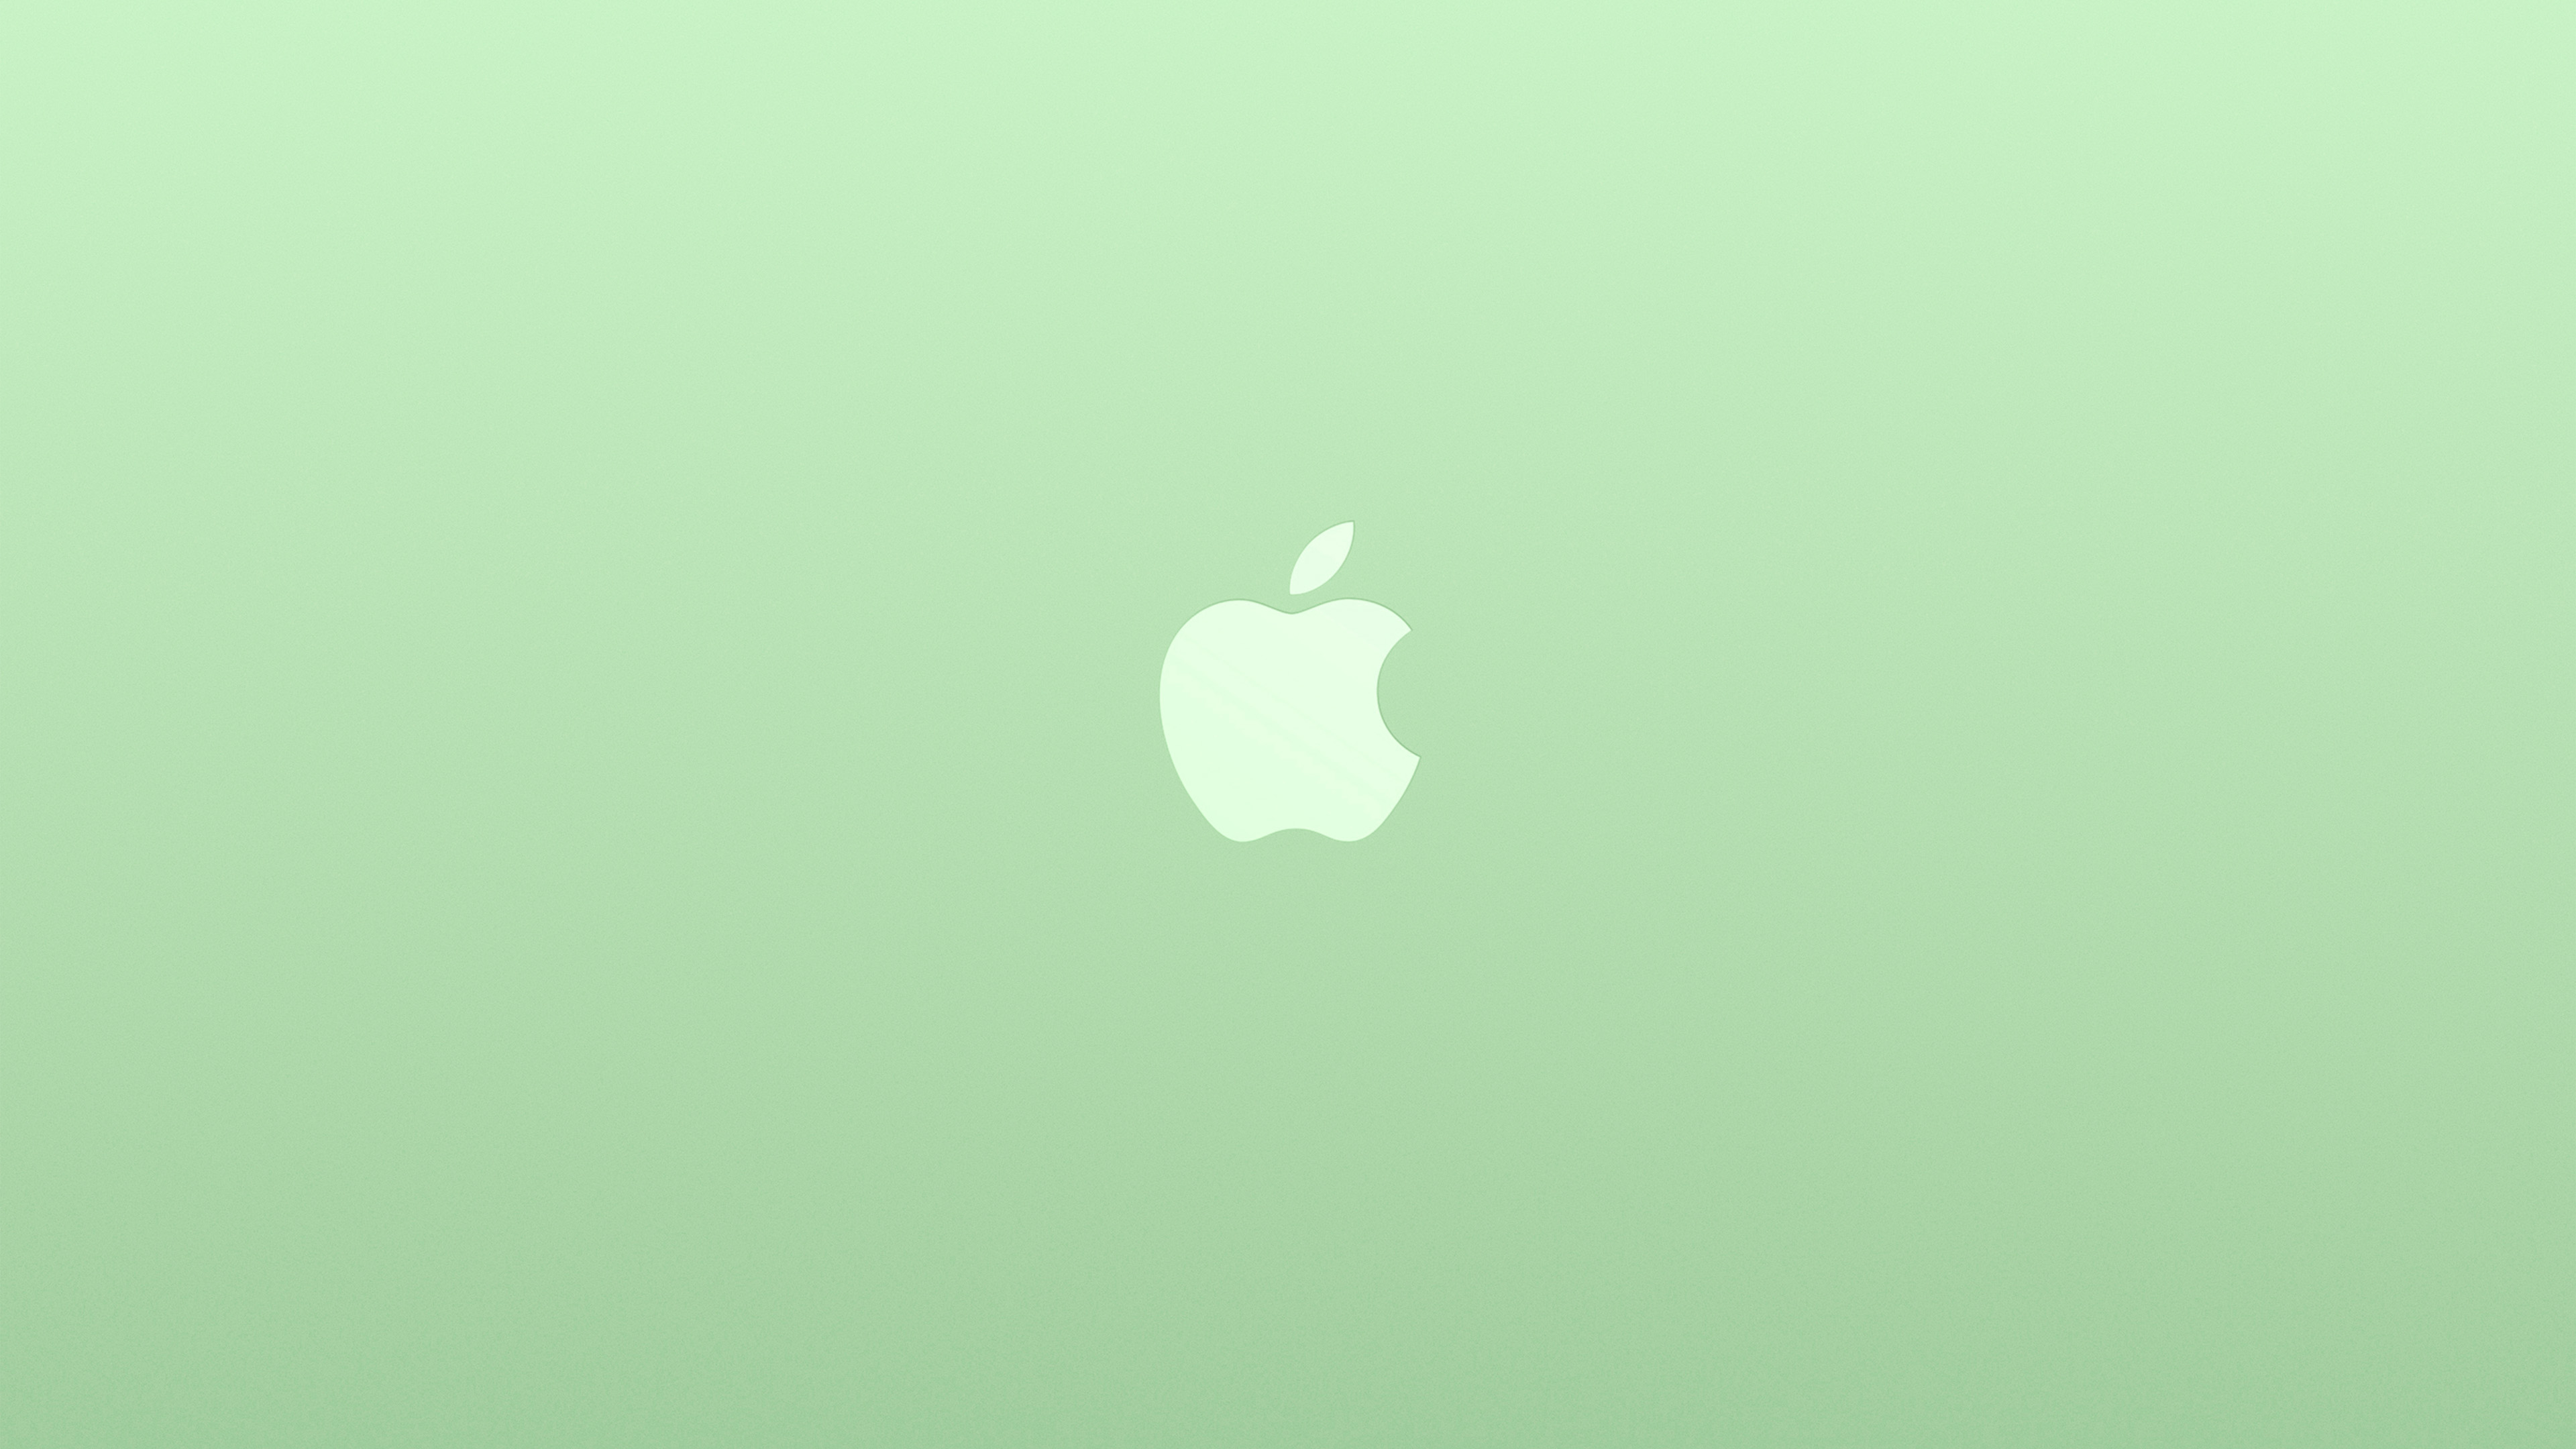 wallpaper for desktop, laptop. logo apple green white minimal illustration art color